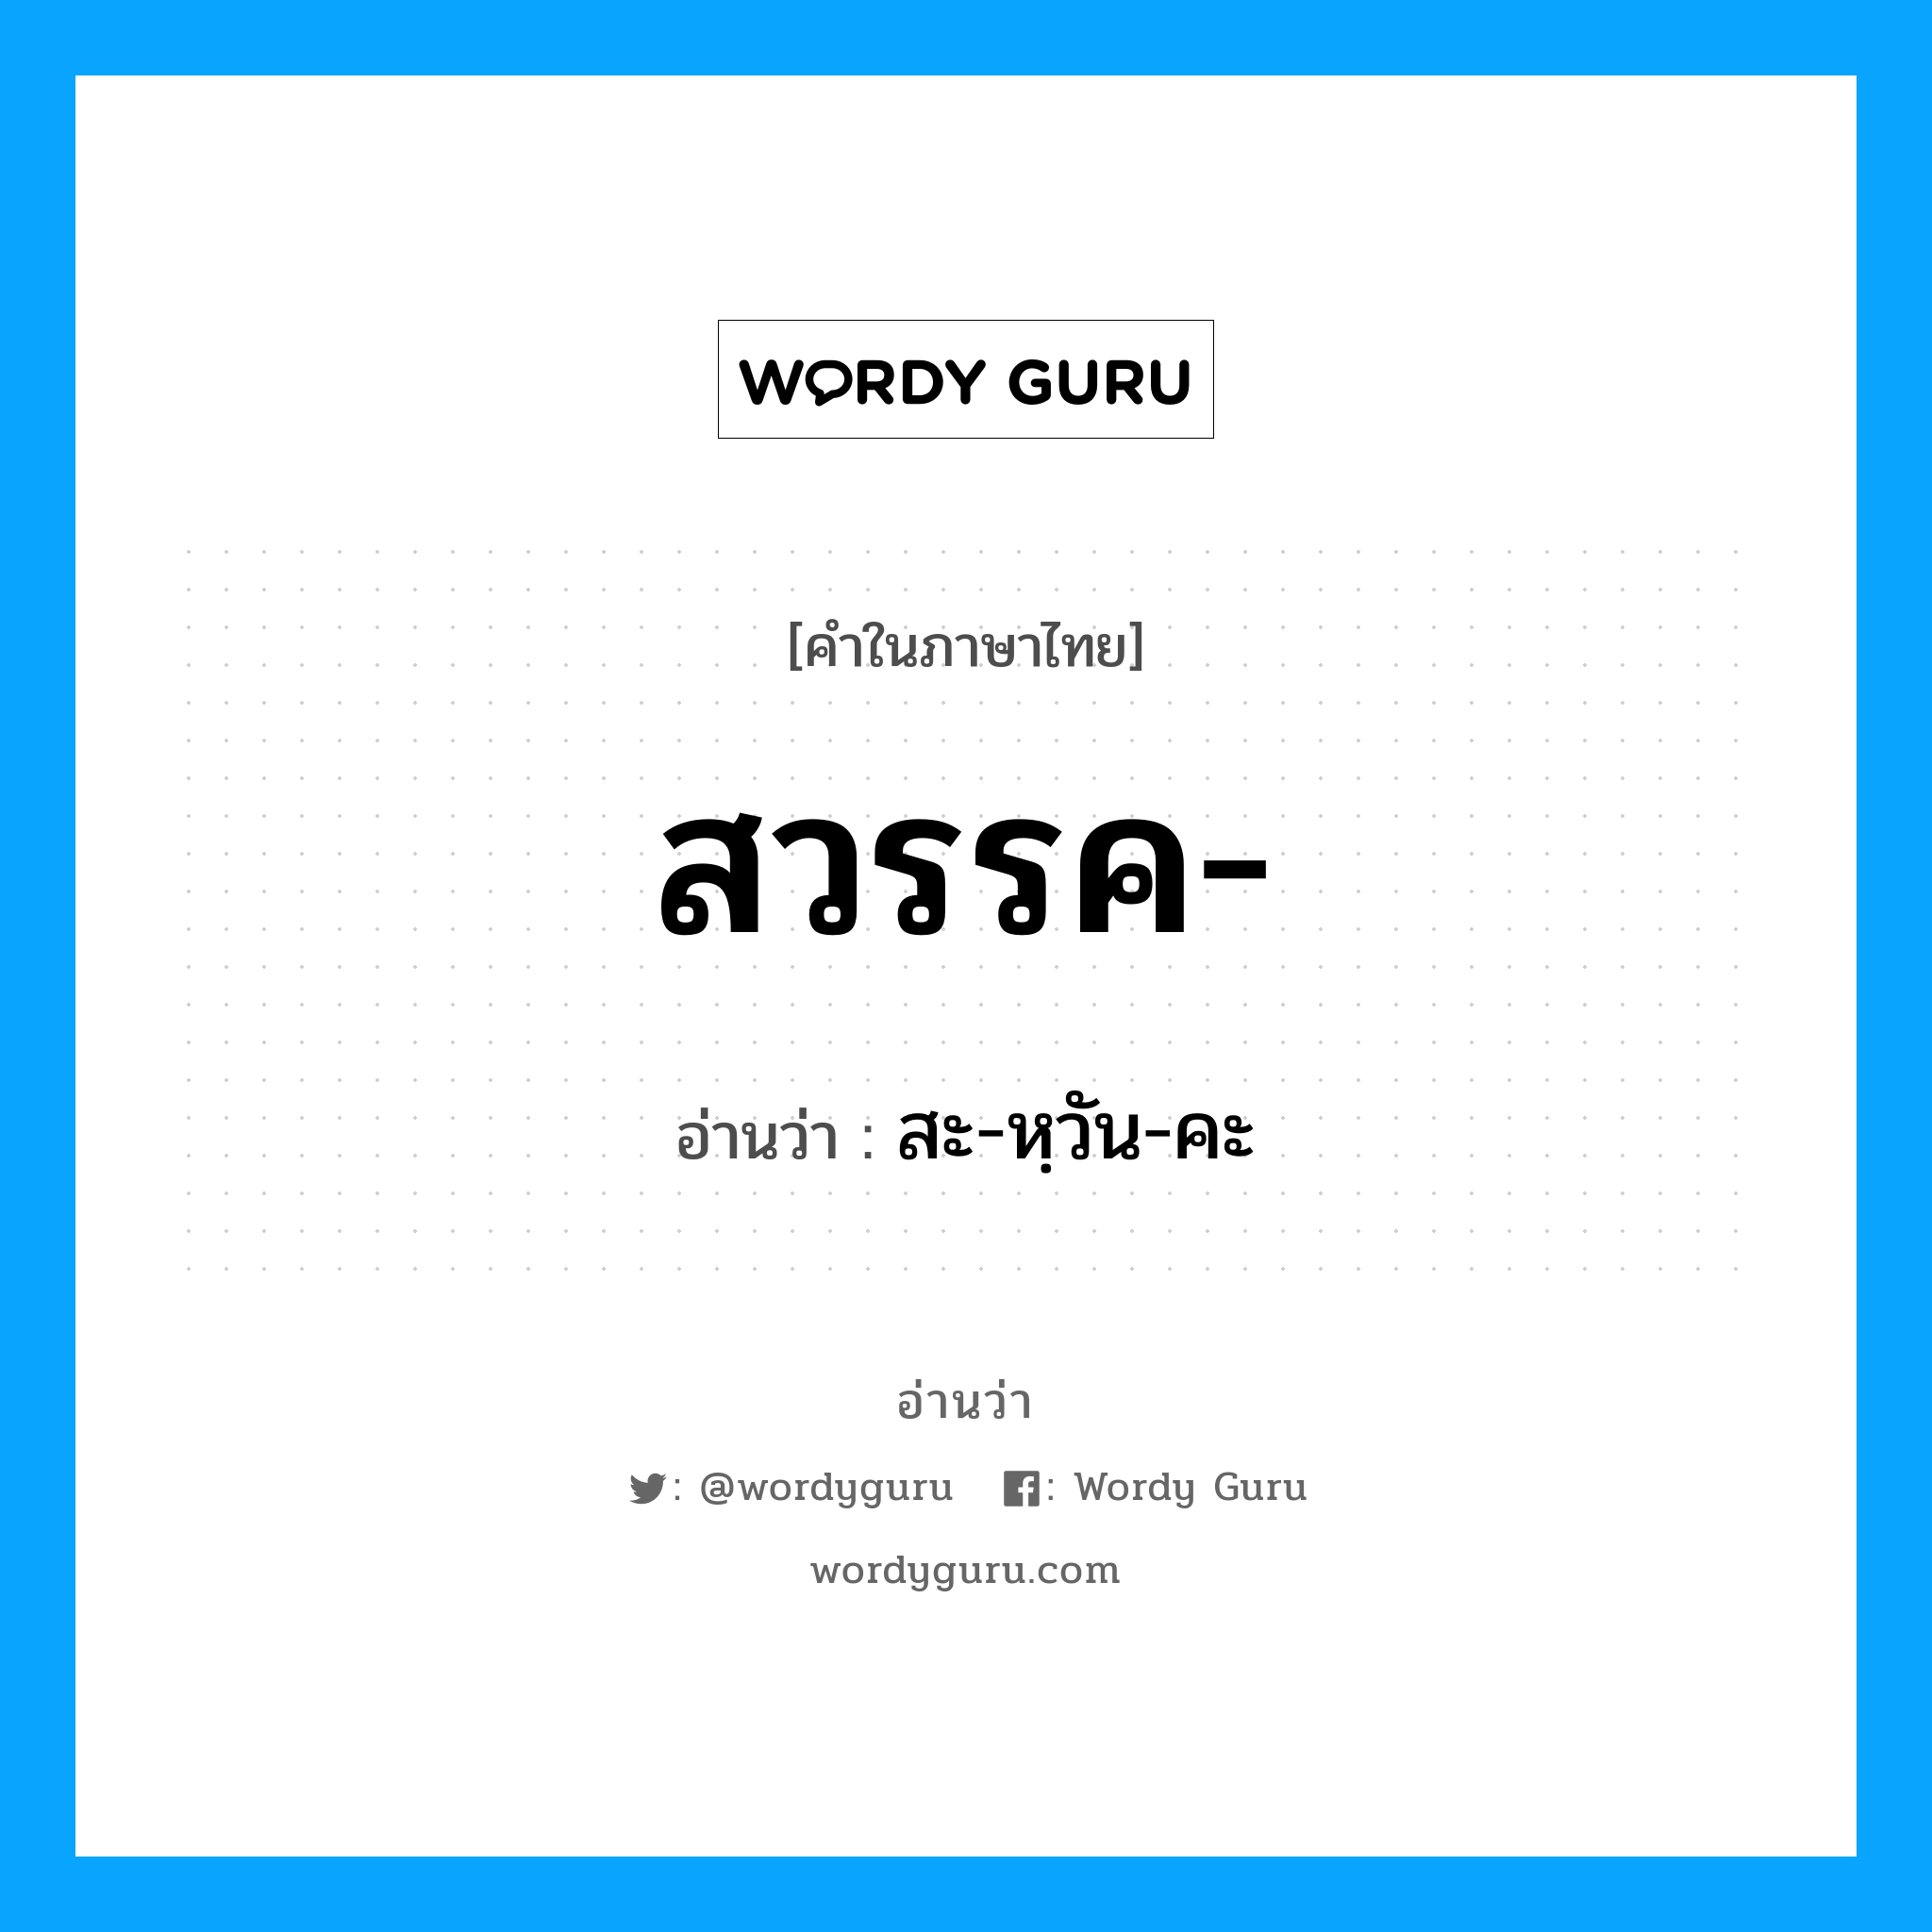 สะ-หฺวัน-คะ เป็นคำอ่านของคำไหน?, คำในภาษาไทย สะ-หฺวัน-คะ อ่านว่า สวรรค-